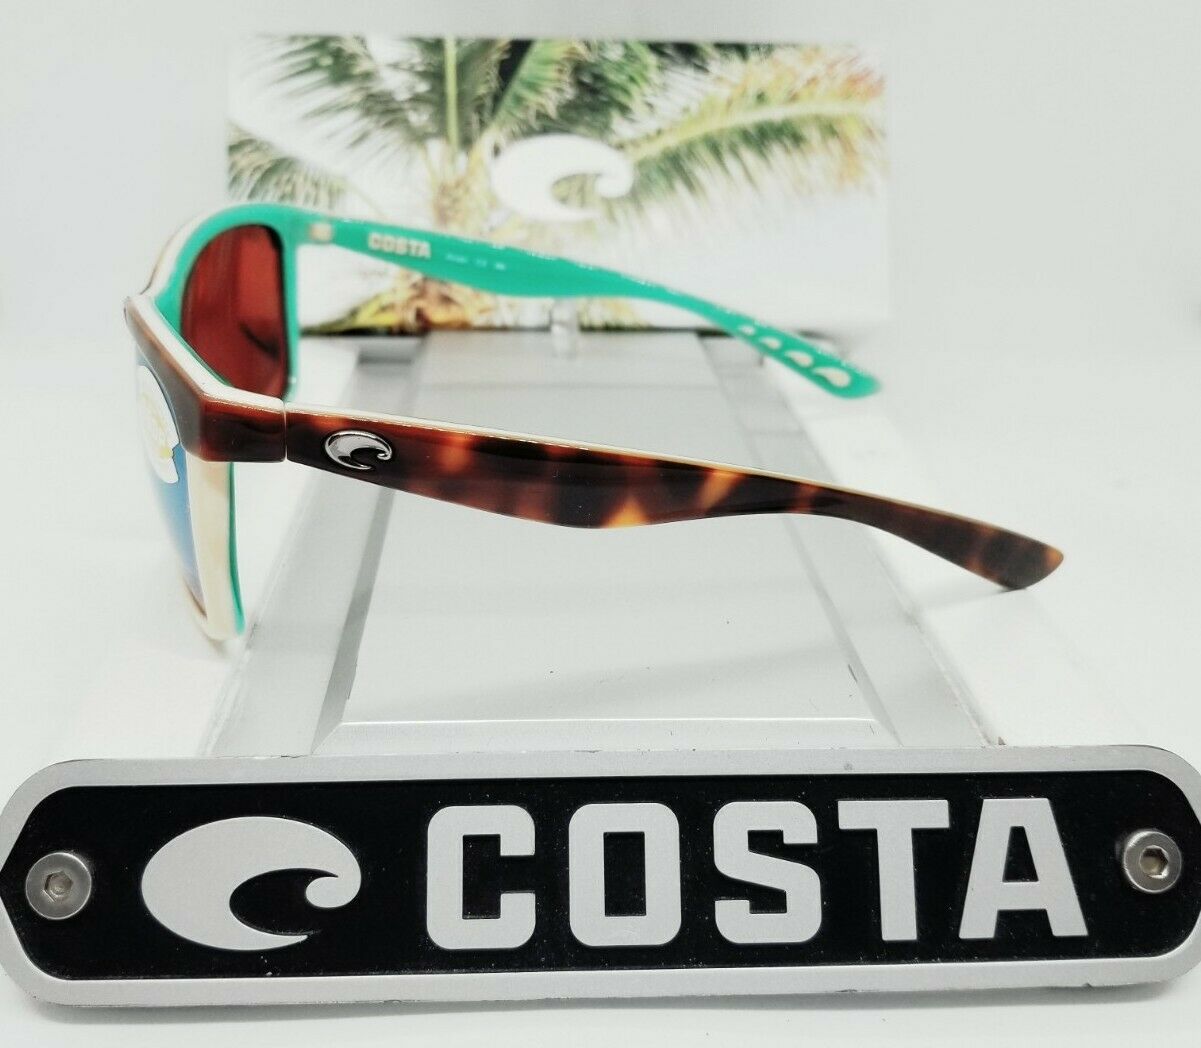 Costa Del Mar Anaa 580P Polarized Sunglasses